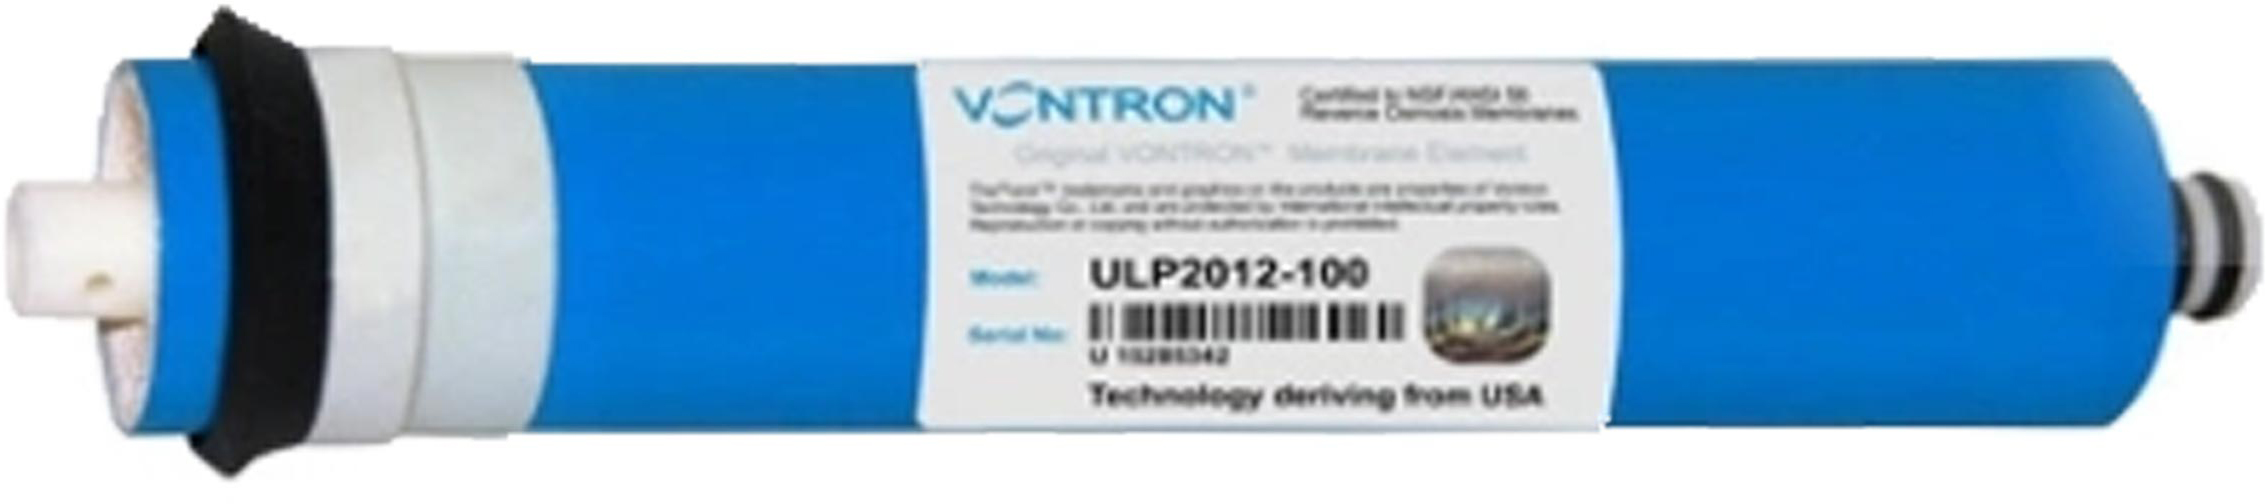 Цена мембрана vontron для обратного осмоса Vontron ULP2012-100 в Киеве